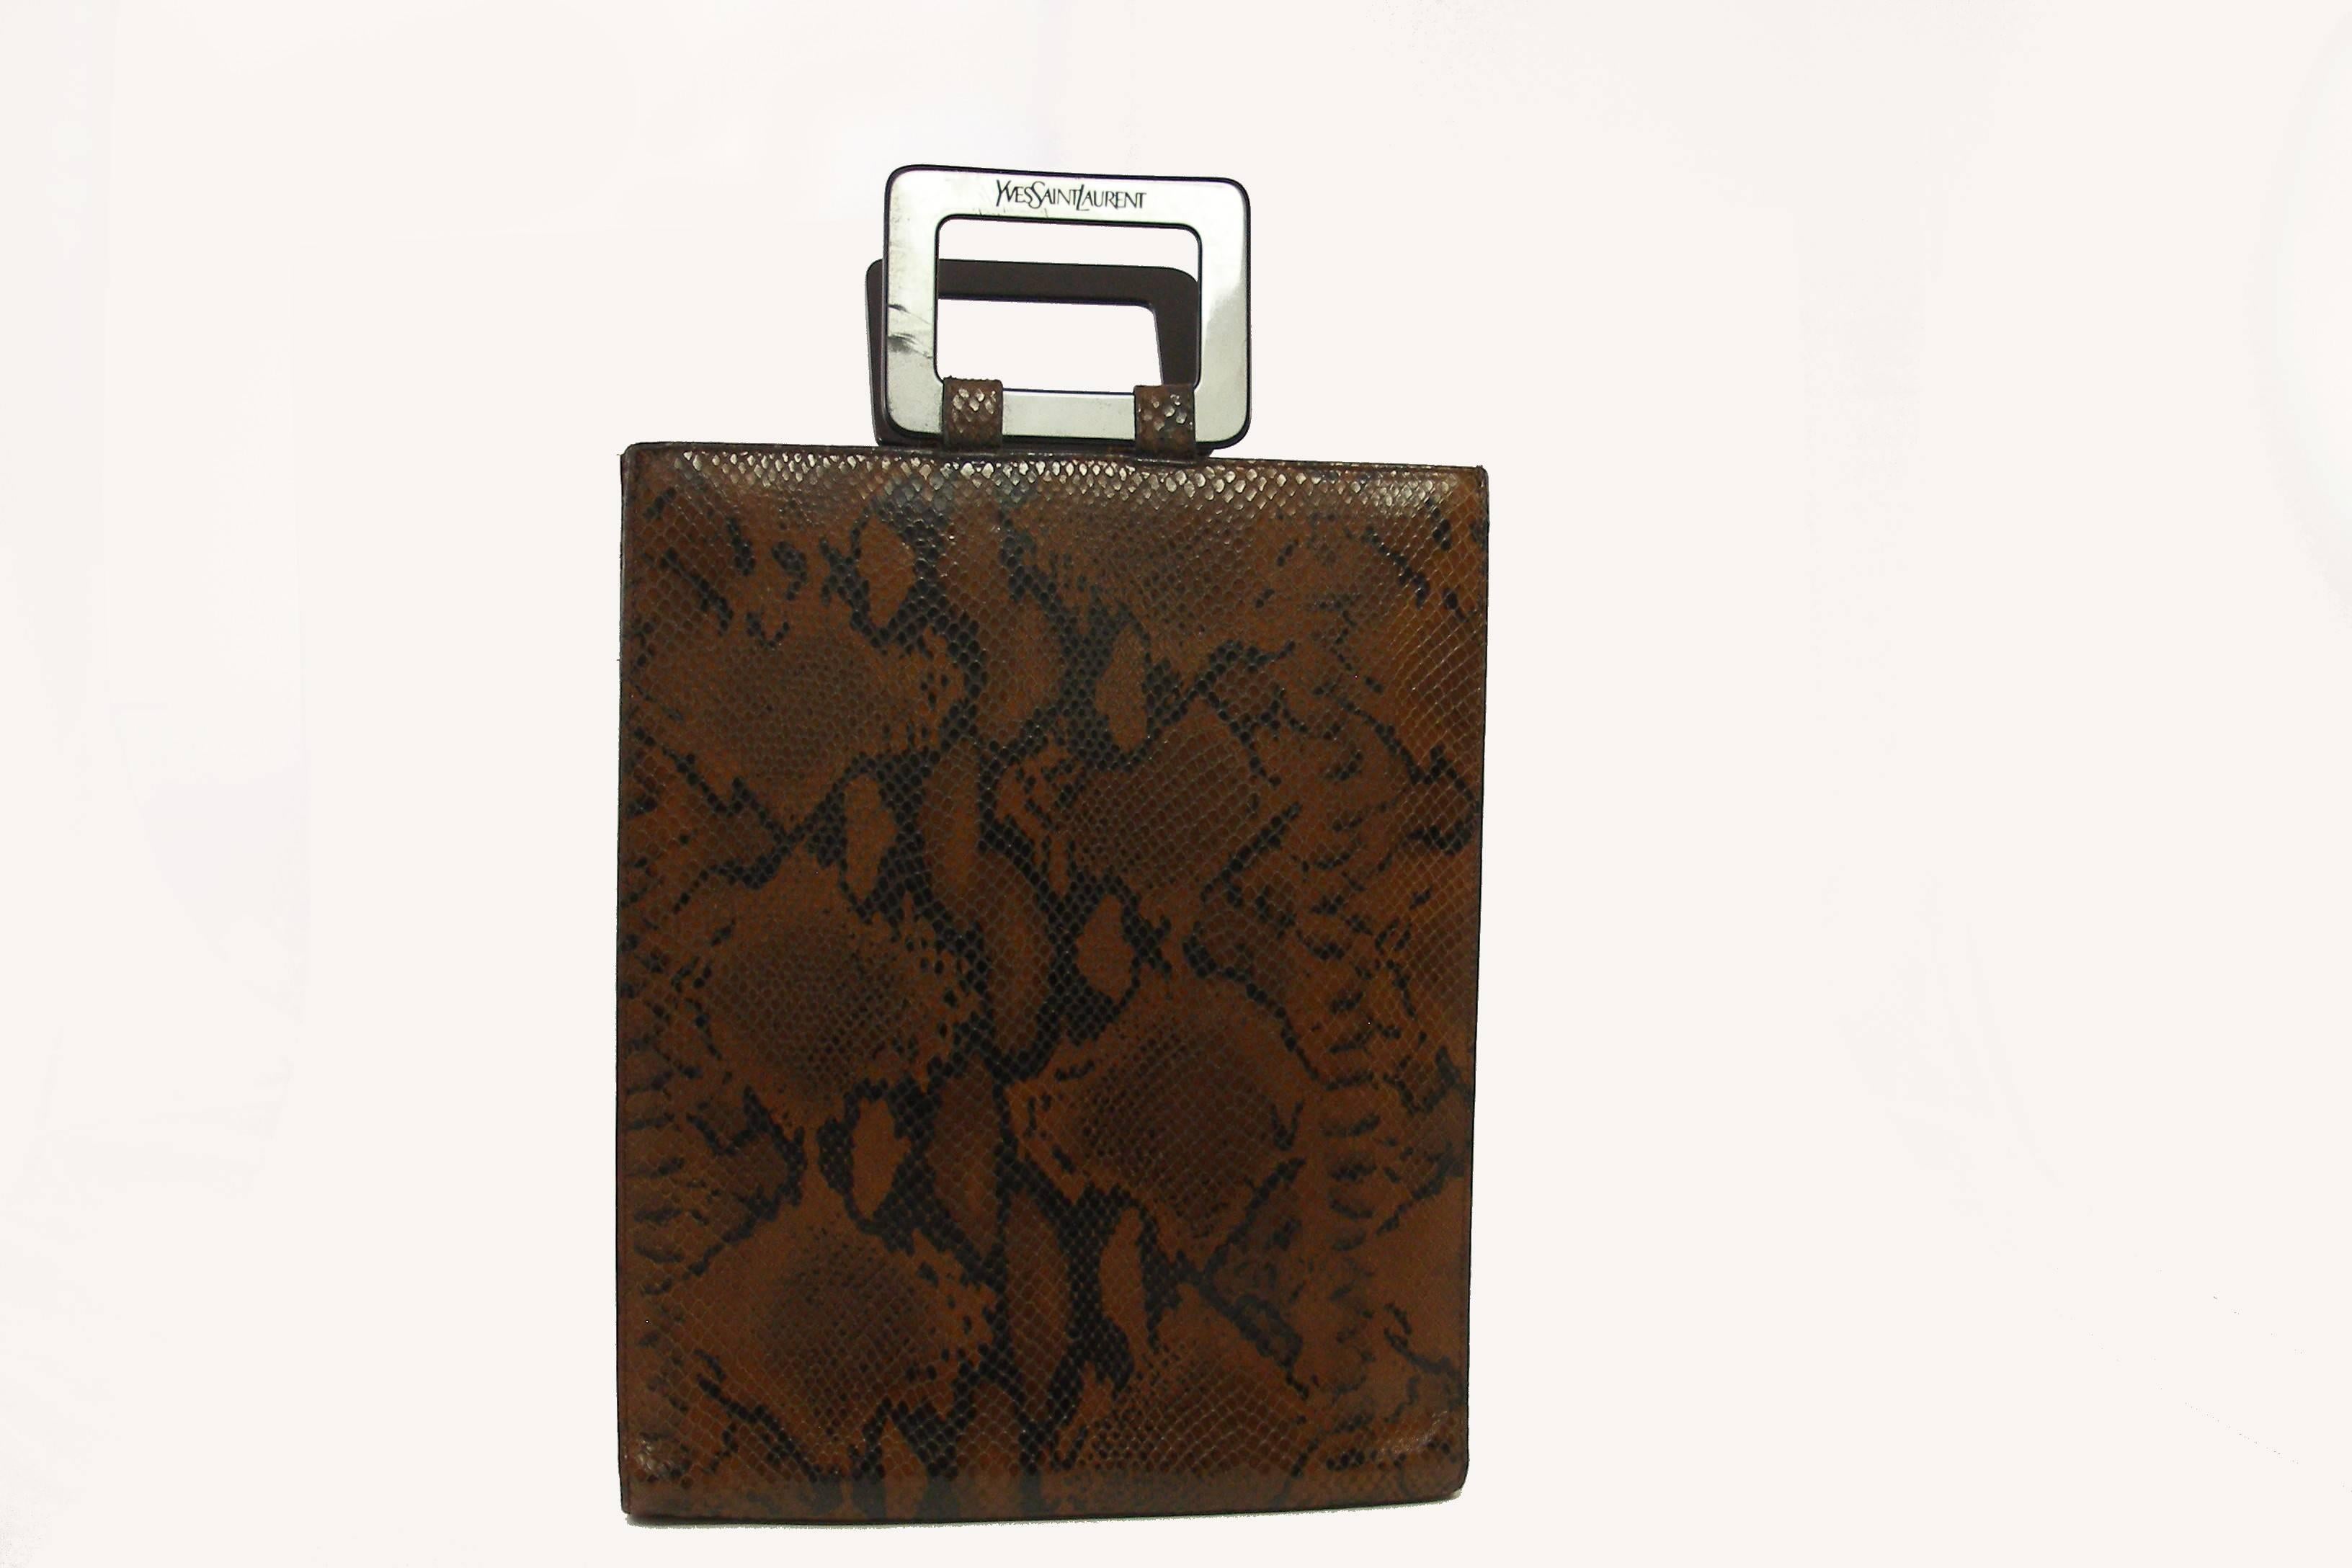 Yves Saint Laurent Ysl Vintage handbag in Python Leather  For Sale 2